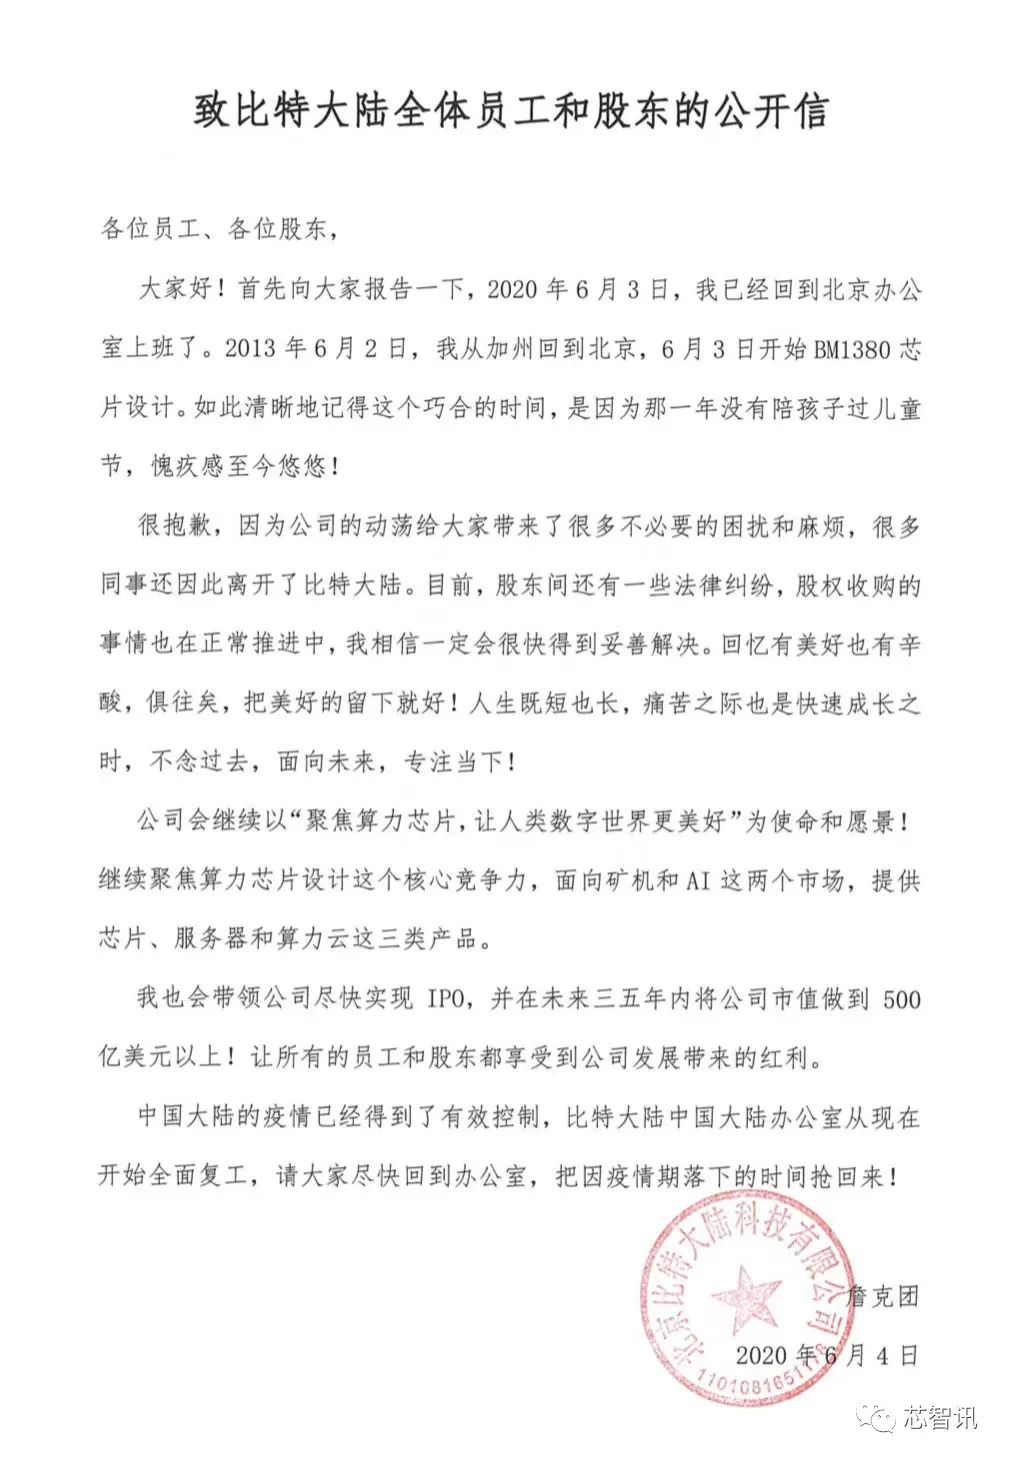 比特大陆内斗加码：詹克团启用新公章，要求深圳工厂扣押矿机